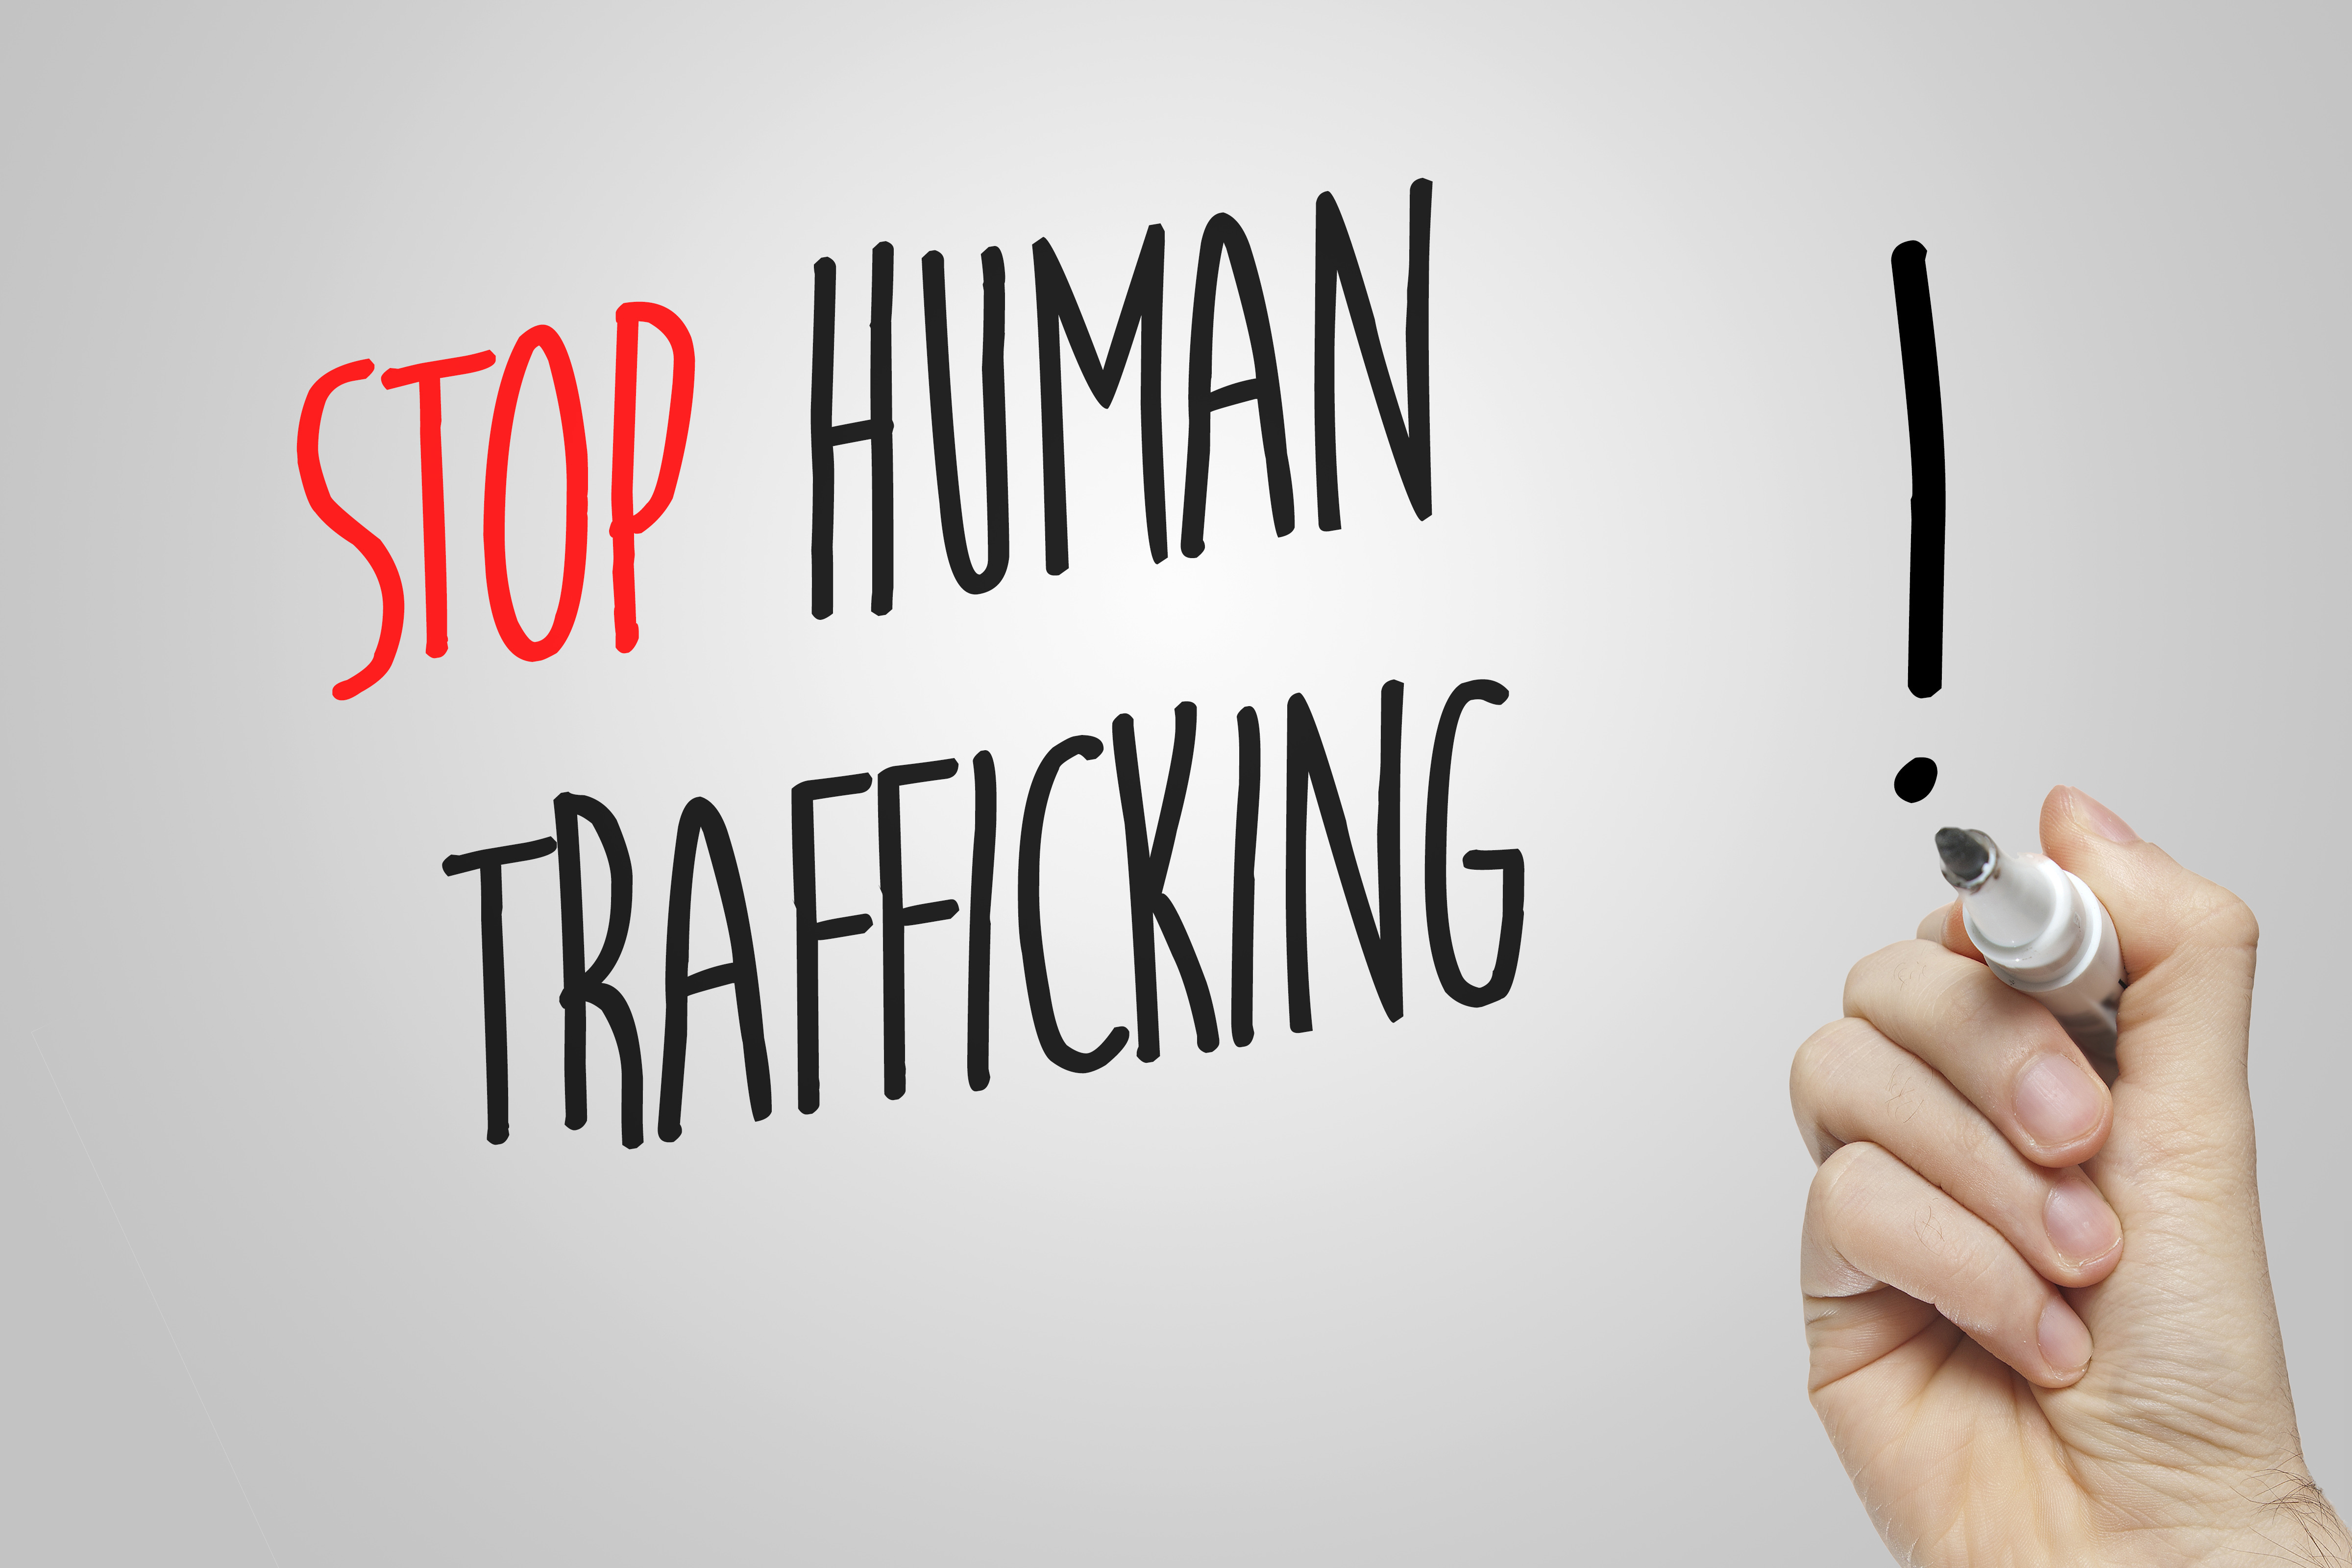 opposing argument to human trafficking